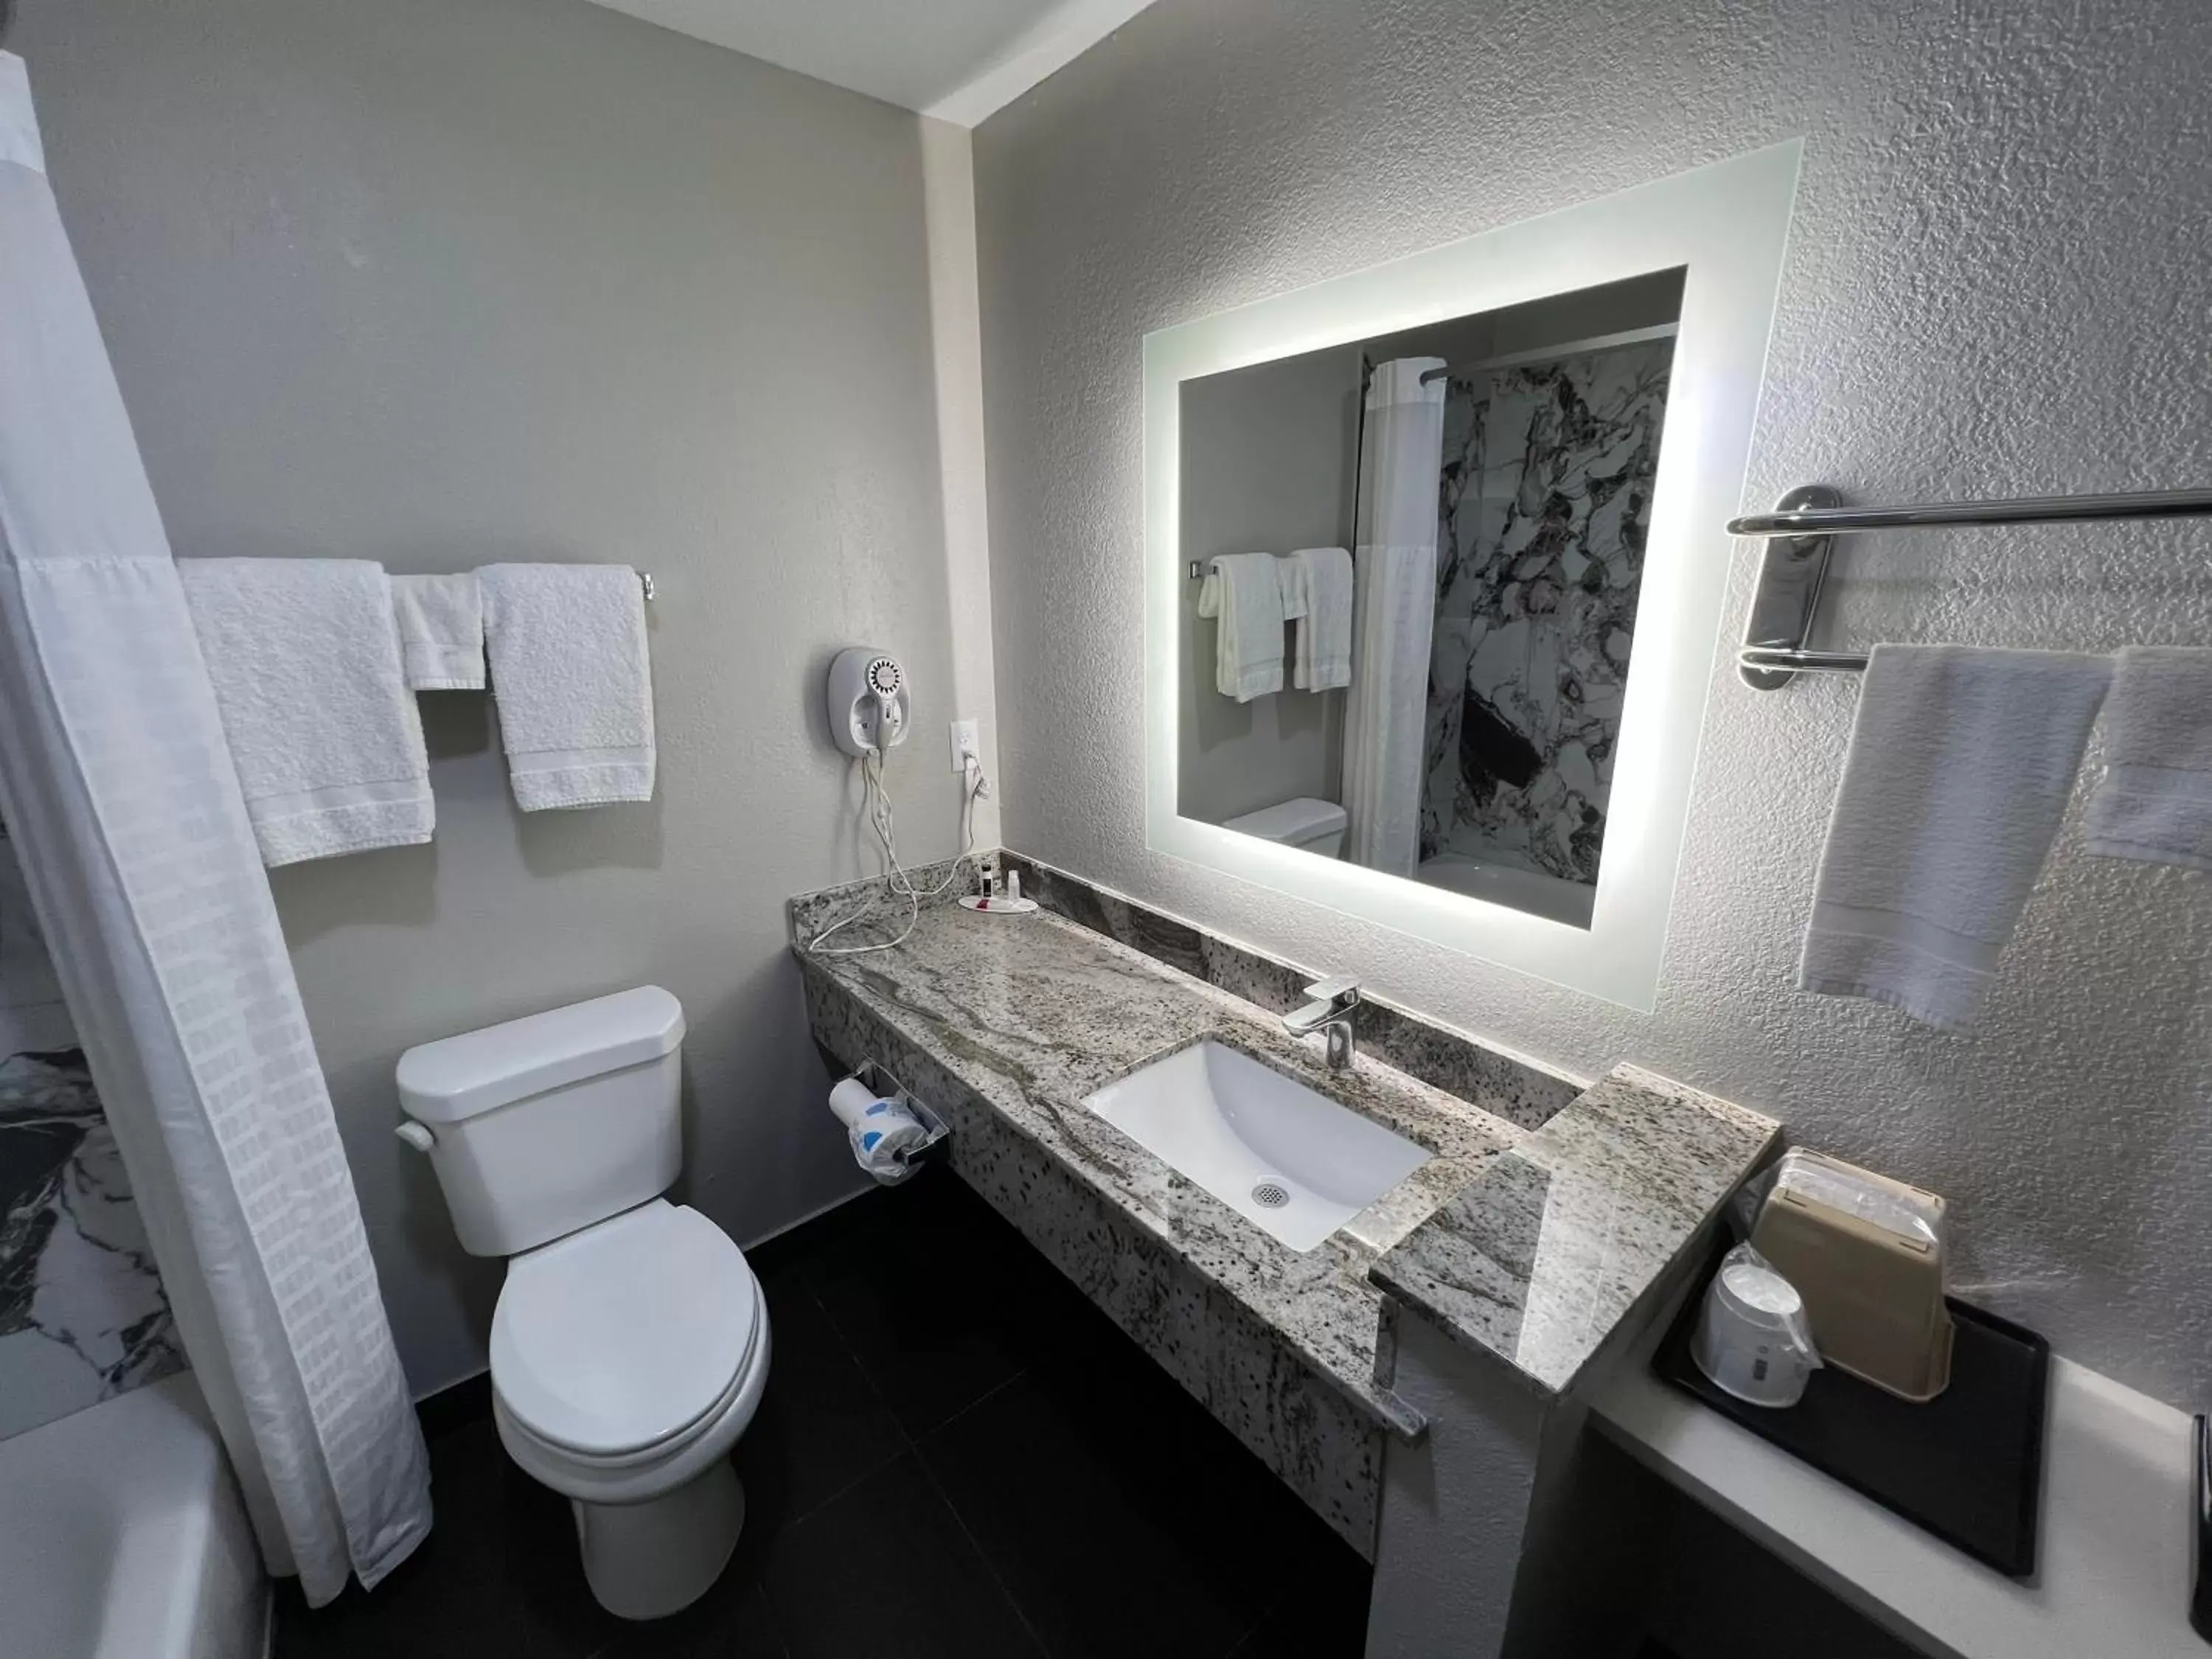 Toilet, Bathroom in Super 8 by Wyndham Lake Charles/Sulphur